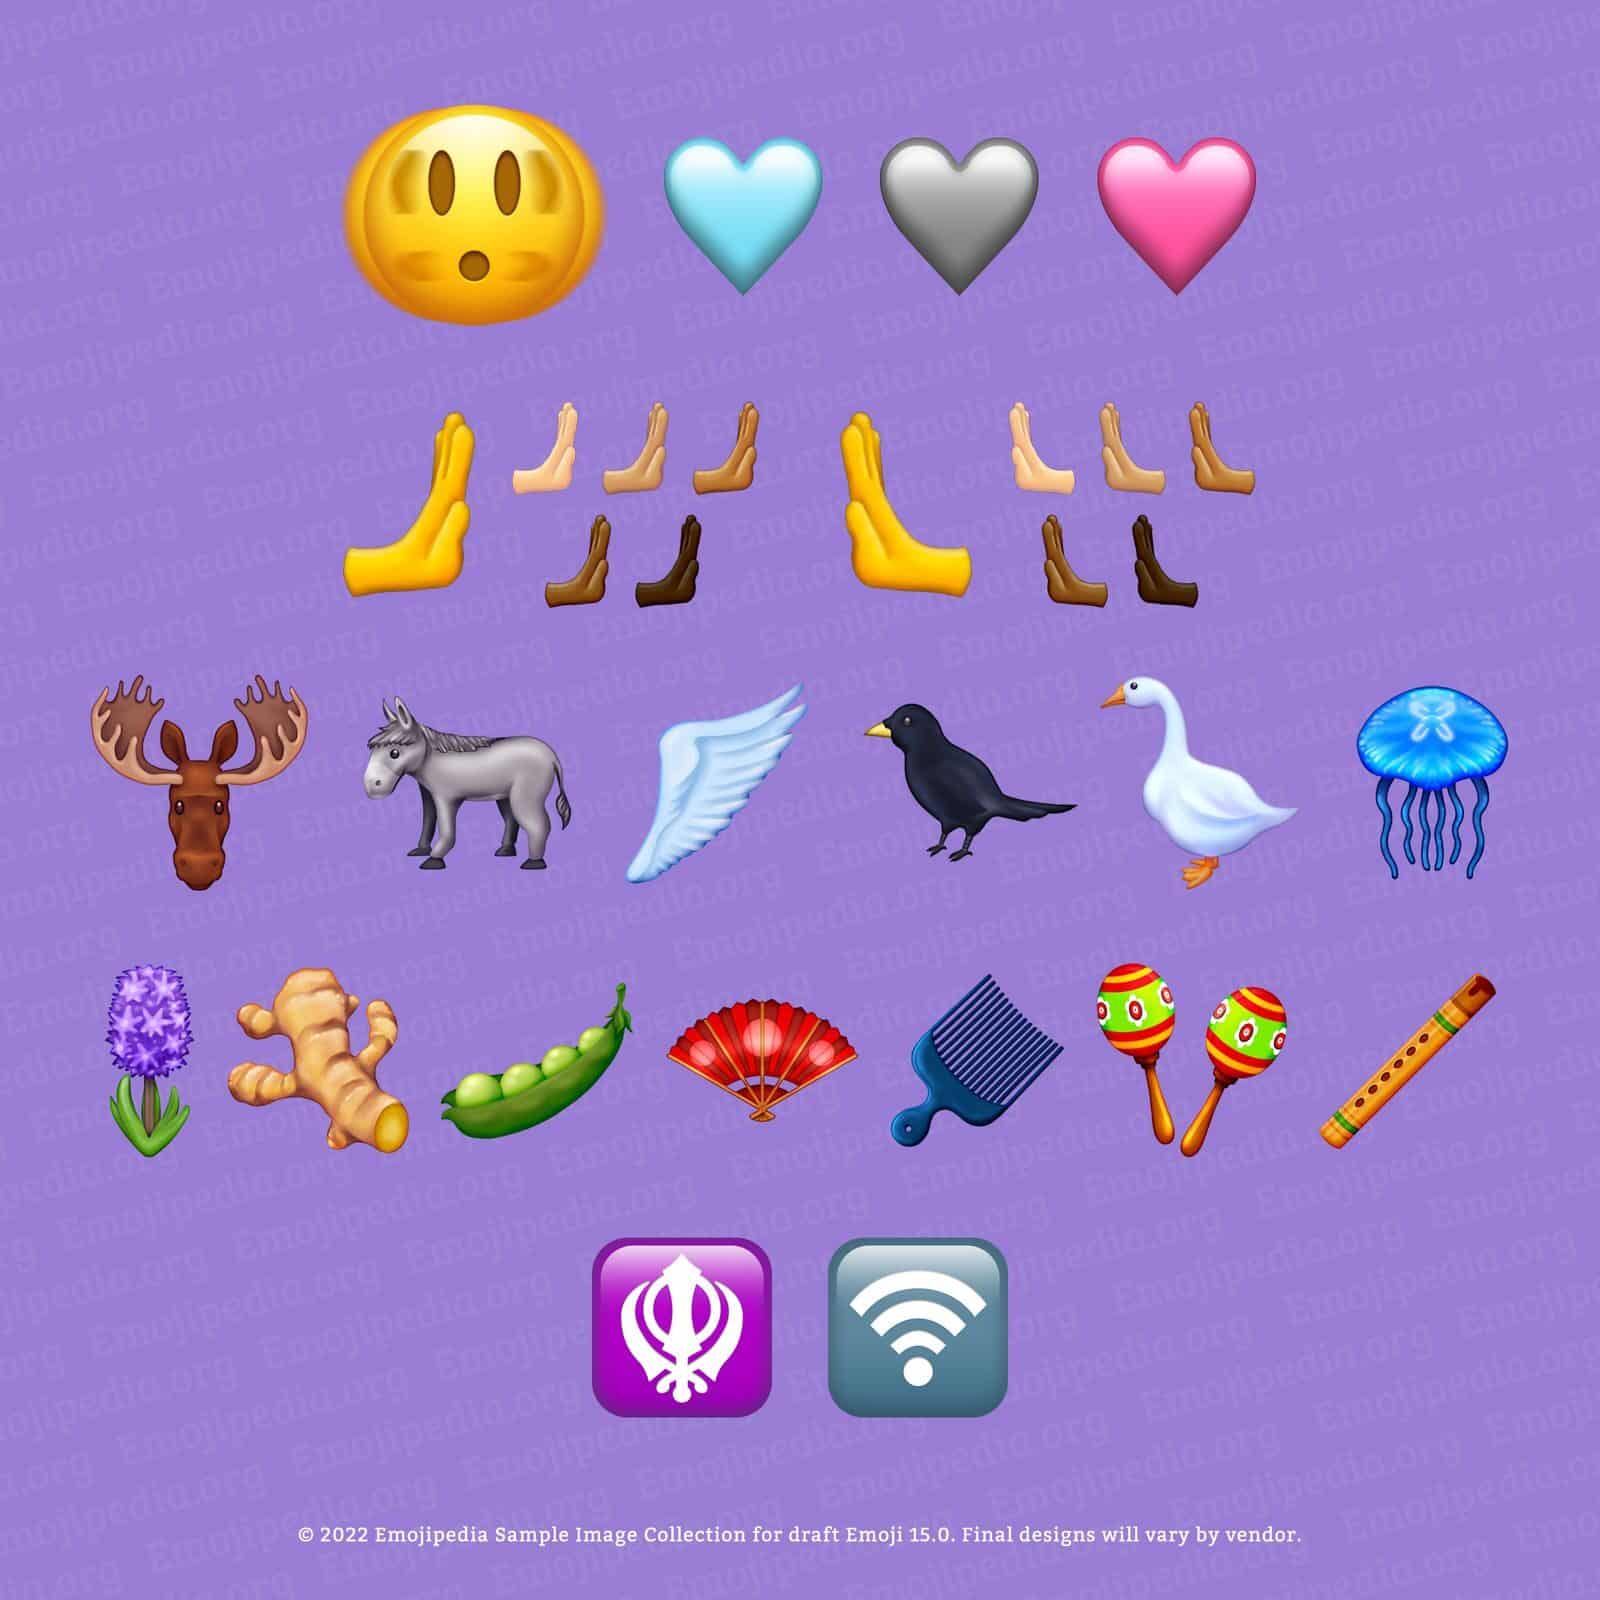 31 nouveaux émojis arrivent en 2023 Emojis